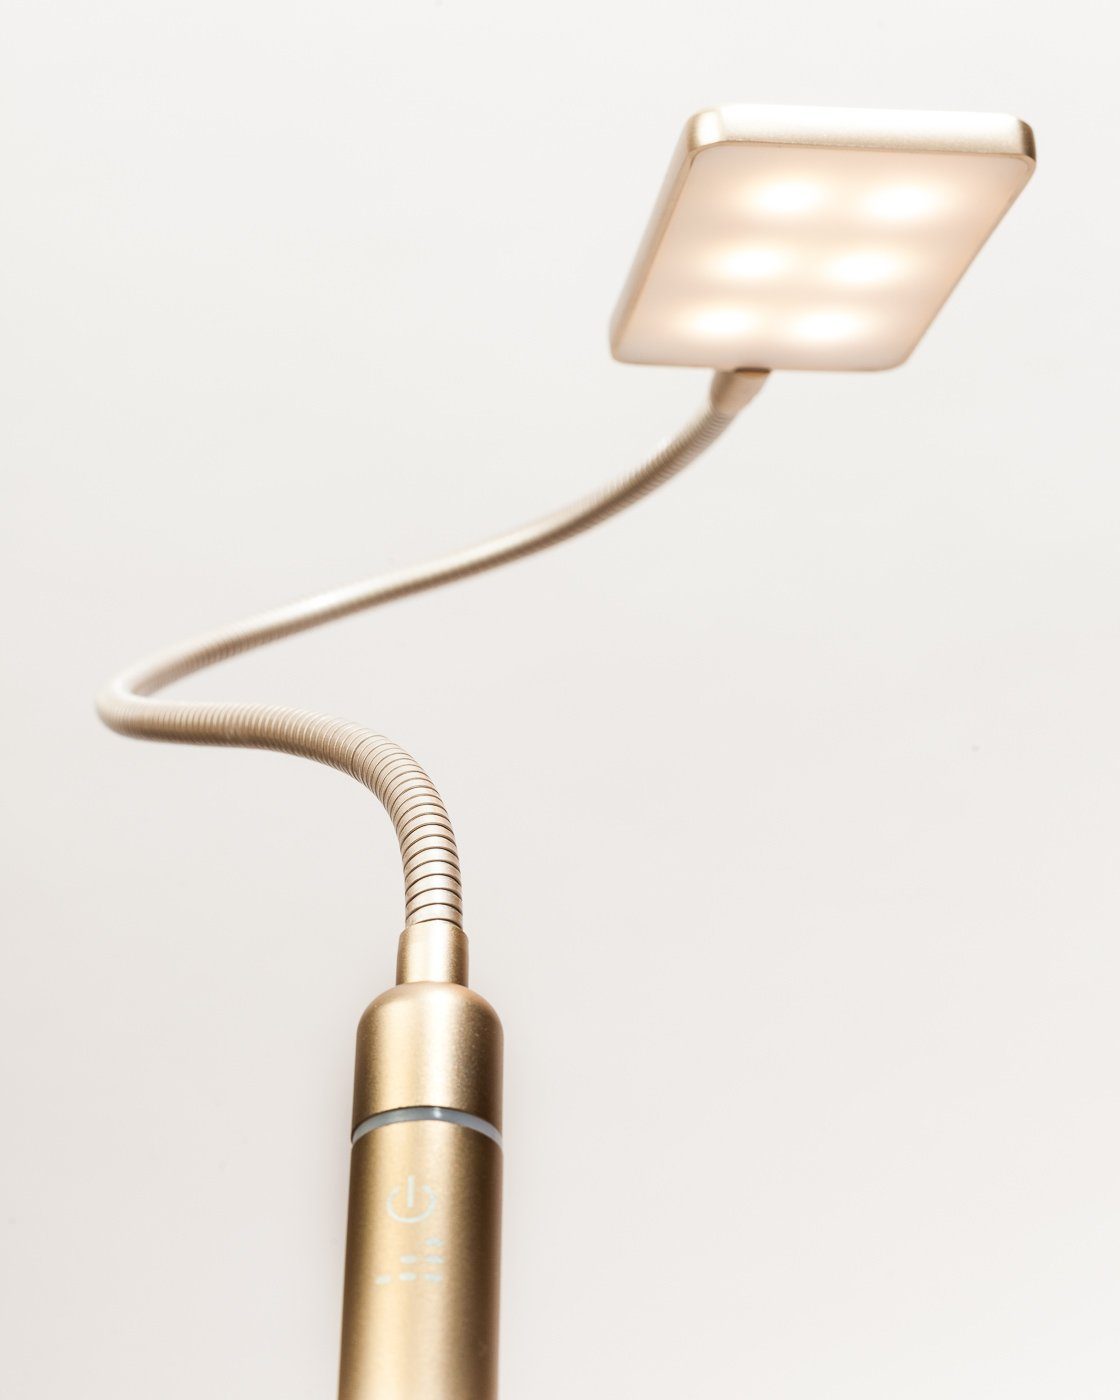 Leseleuchte matt, Bettleuchte Set 4W messing LED warmweiß 1er flexibel, kalb Bettleuchte Leselampe Nachttischlampe